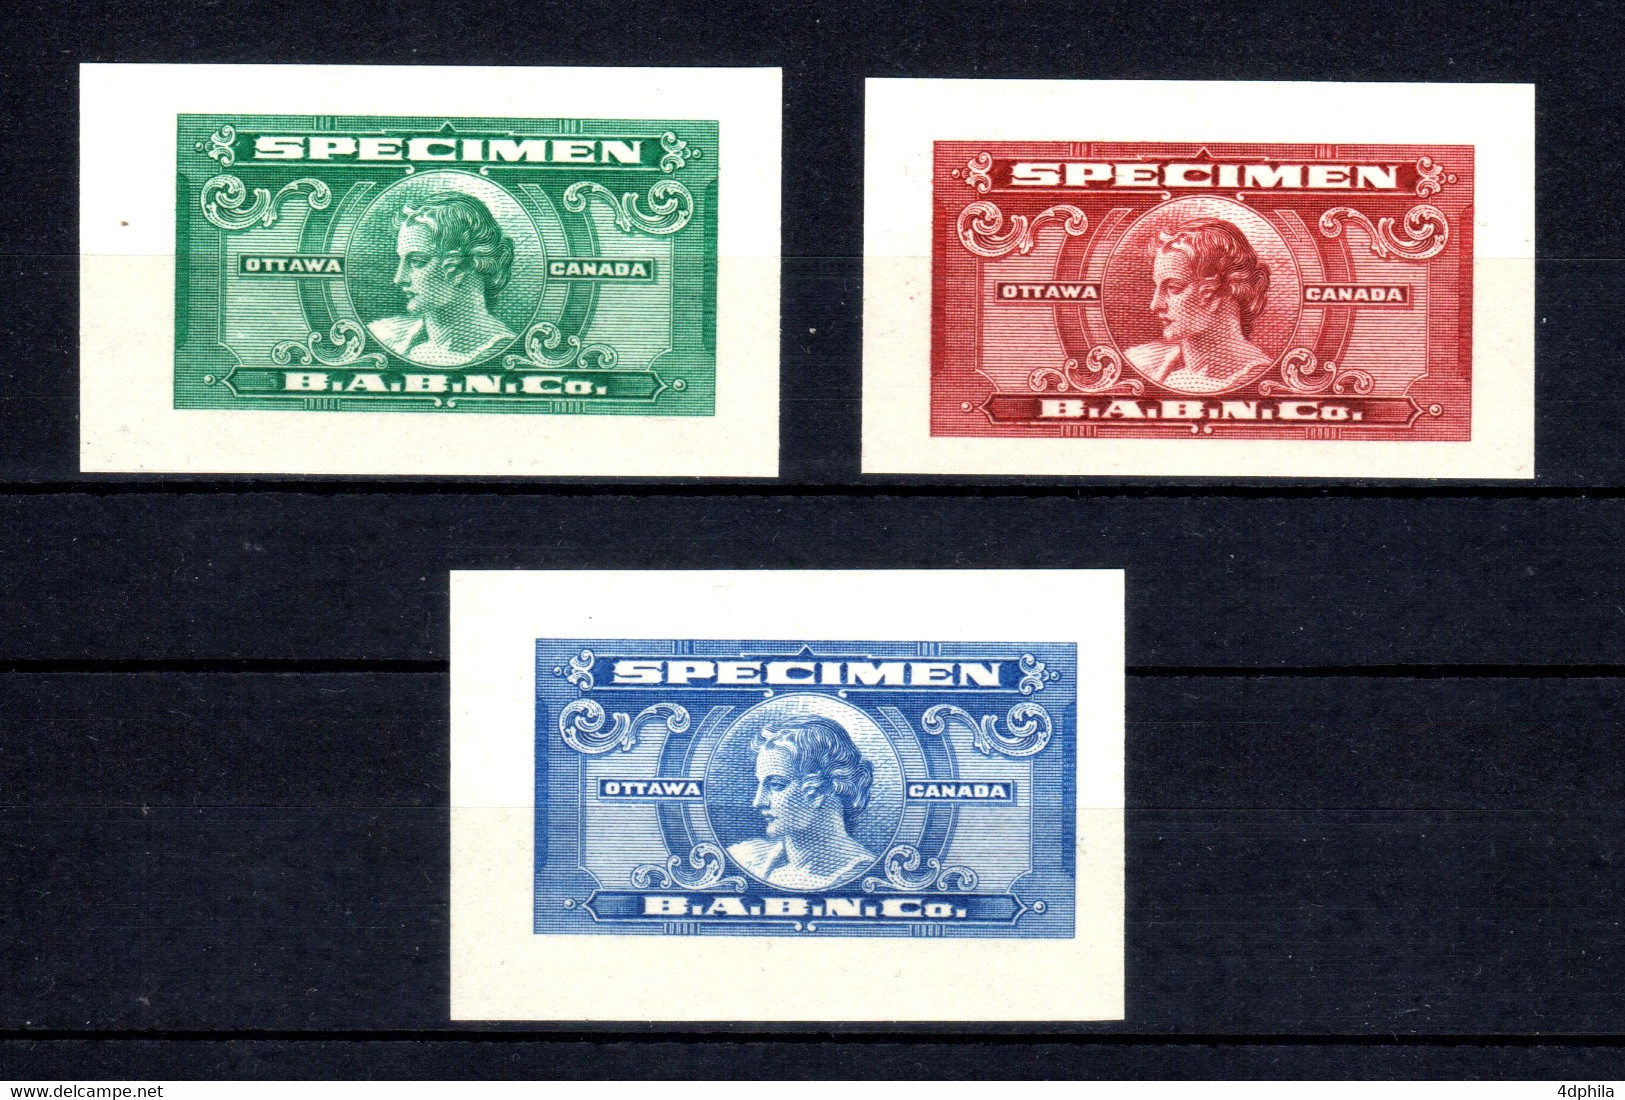 CANADA - 1935 - RARE 3 Dummy Stamps B.A.B.N.Co. - Specimen Essay Proof Trial Prueba Probedruck Test - Varietà & Curiosità